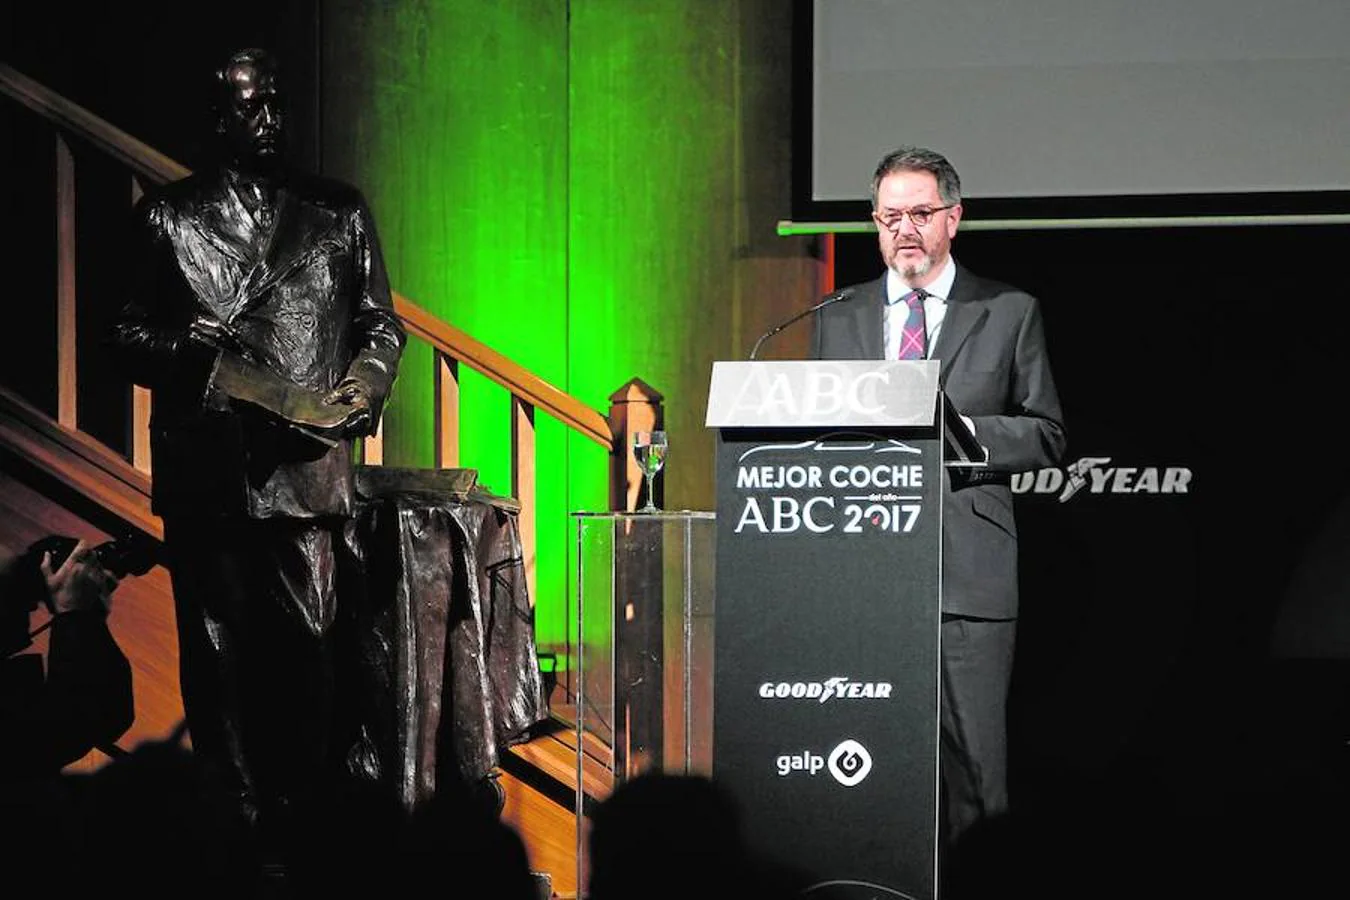 El director de ABC, Bieito Rubido, pronuncia su discurso en la gala del Coche del Año